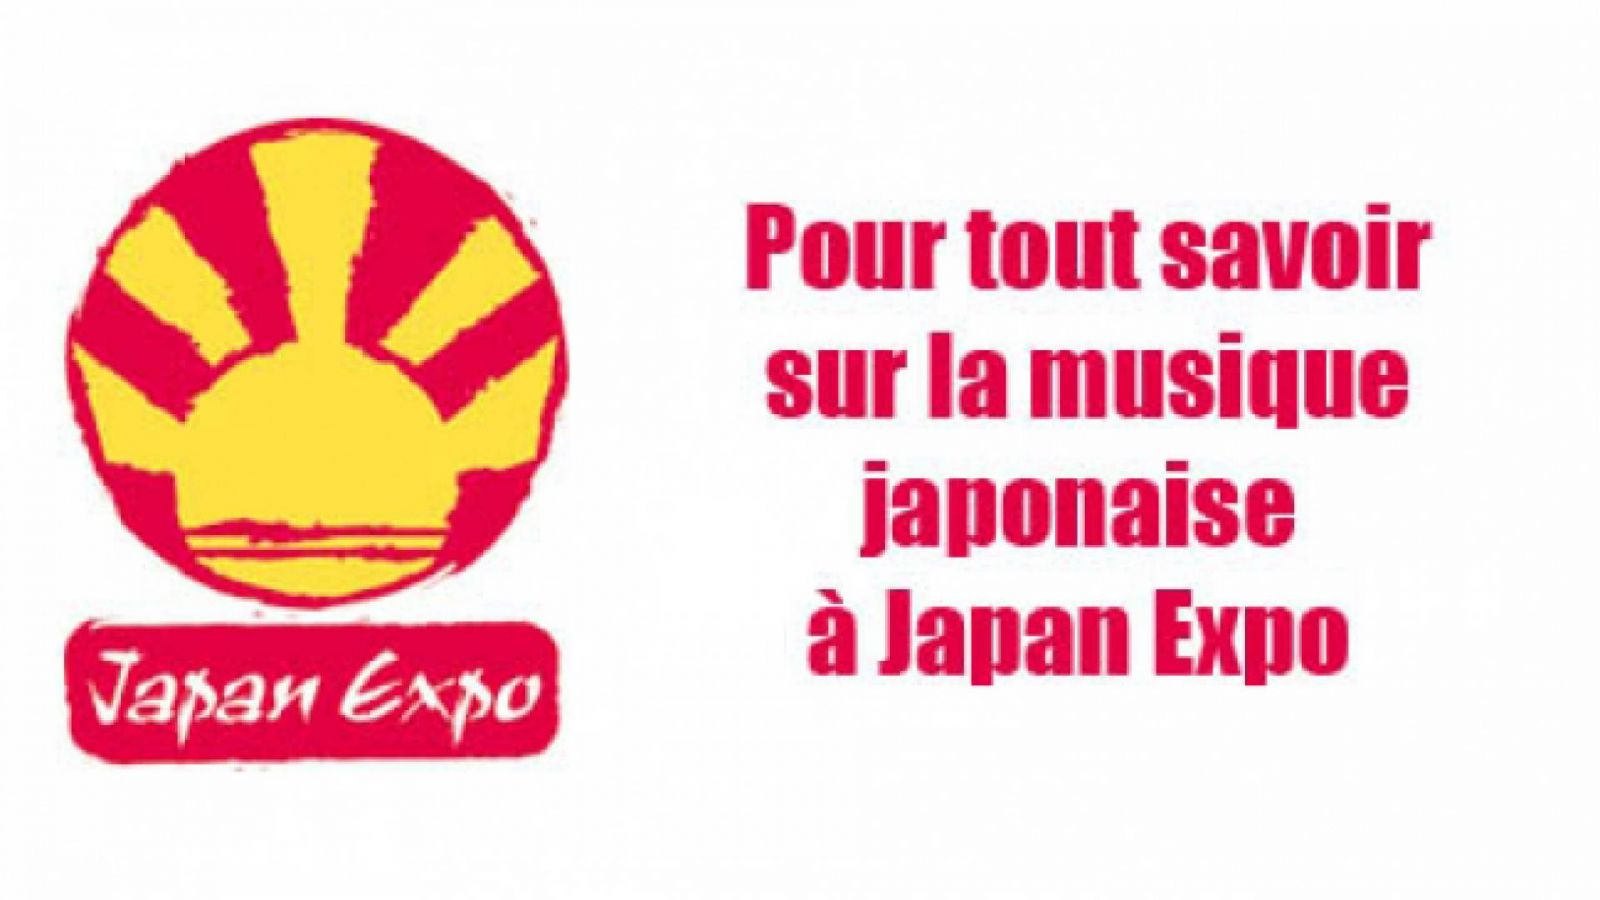 La liste des invités musicaux de Japan Expo s'allonge © JAPAN EXPO